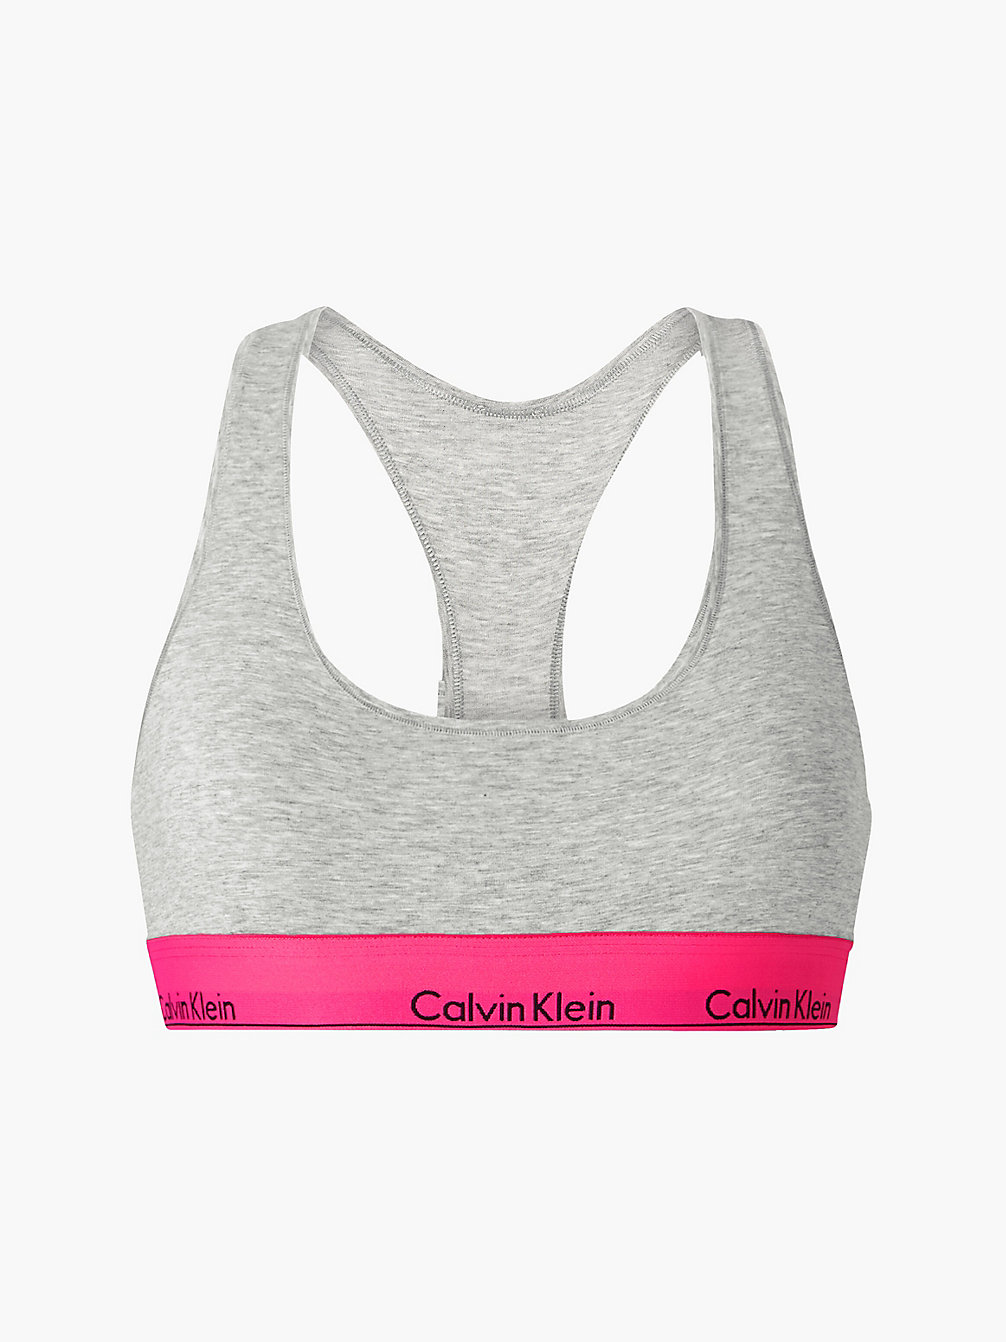 GREY HEATHER_LEGALLY KIM WB Bralette – Modern Cotton undefined Damen Calvin Klein